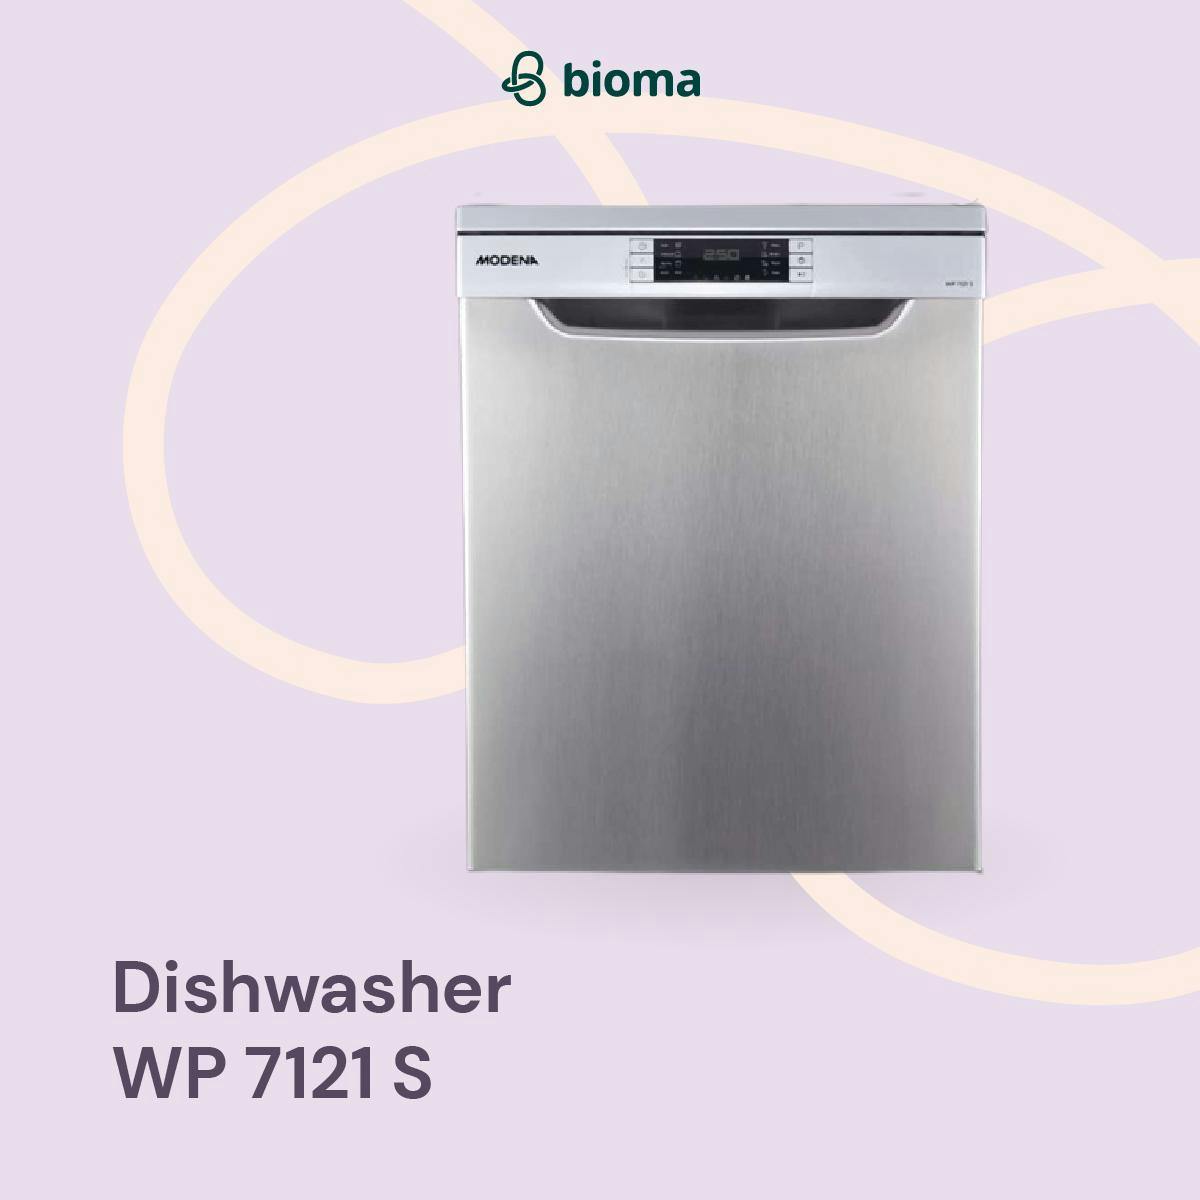 Dishwasher WP 7121 S